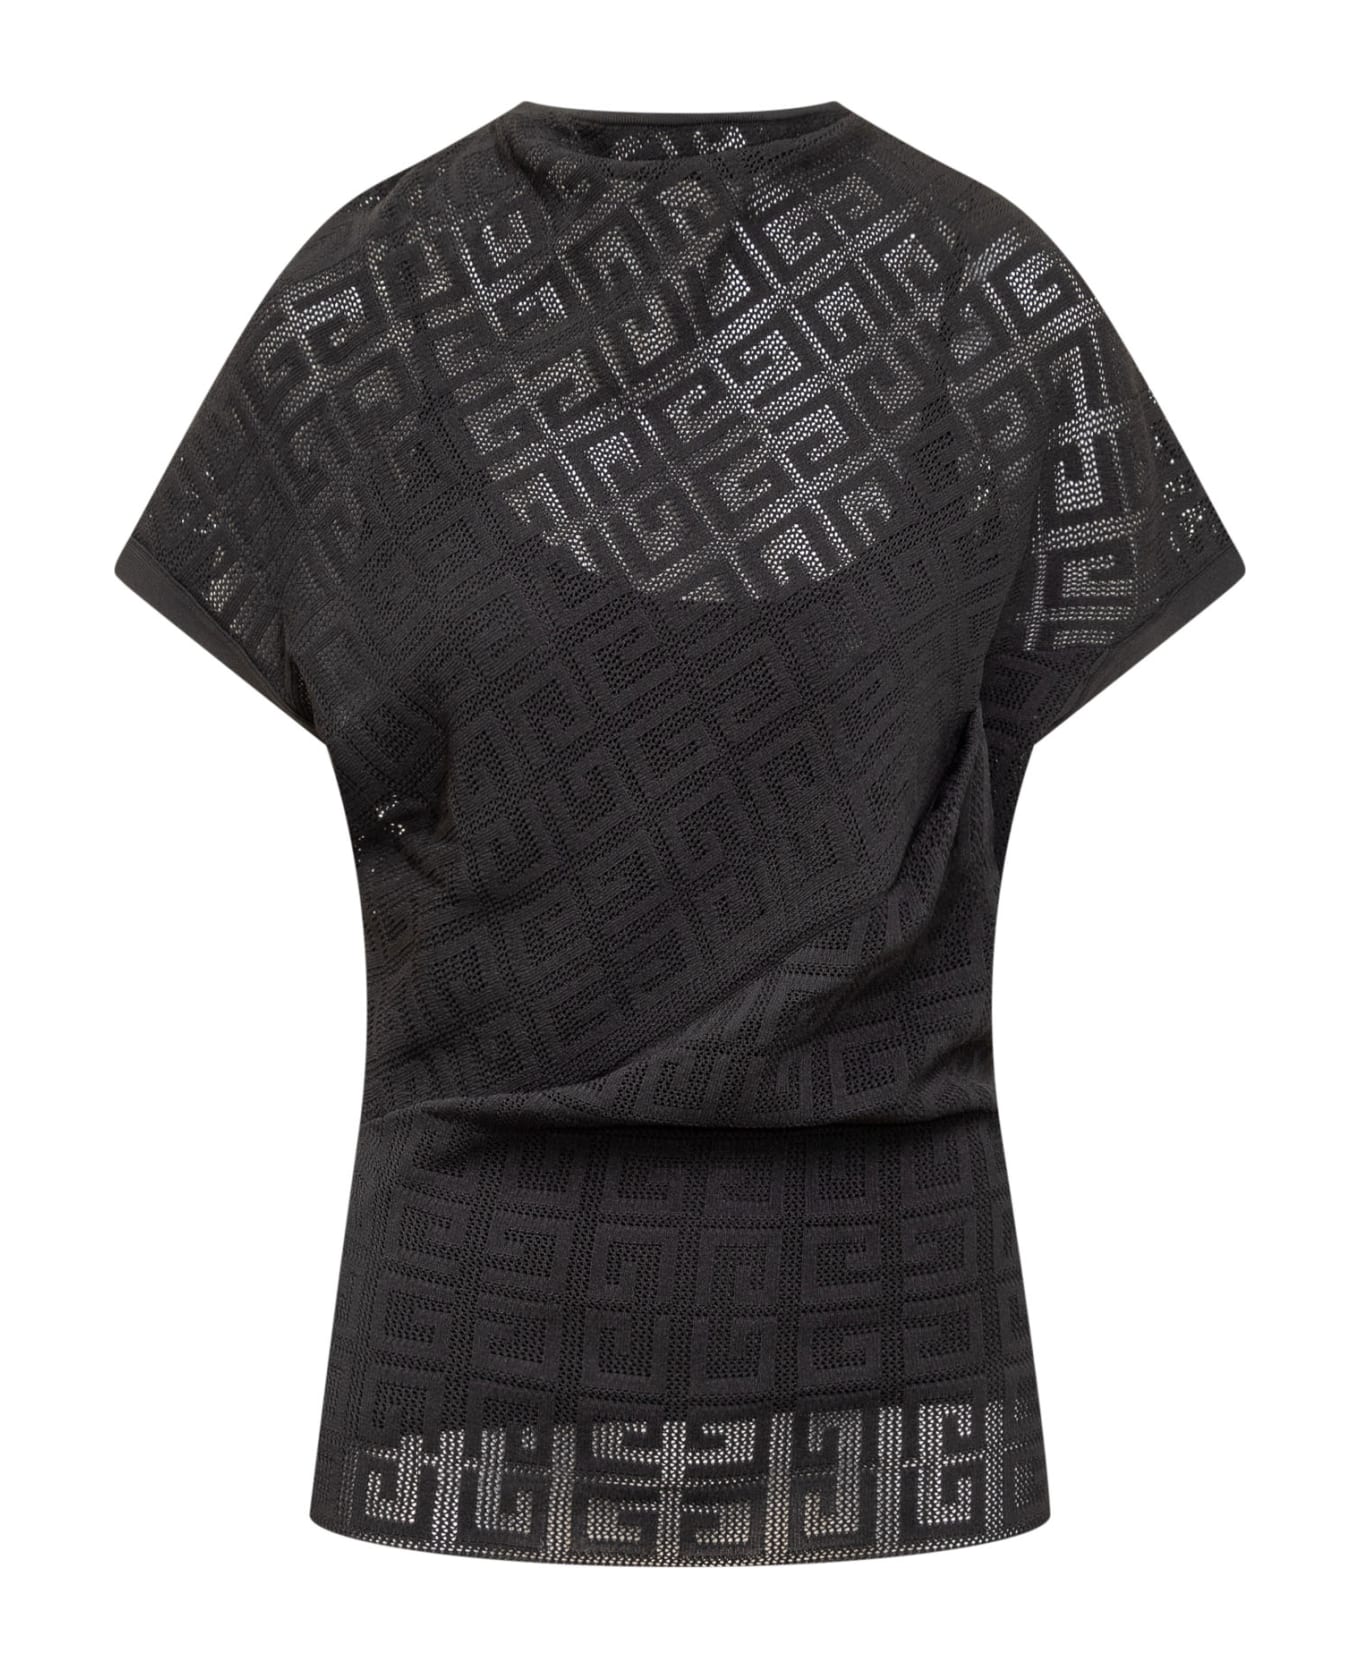 Givenchy Draped Short Sleeves Top - BLACK